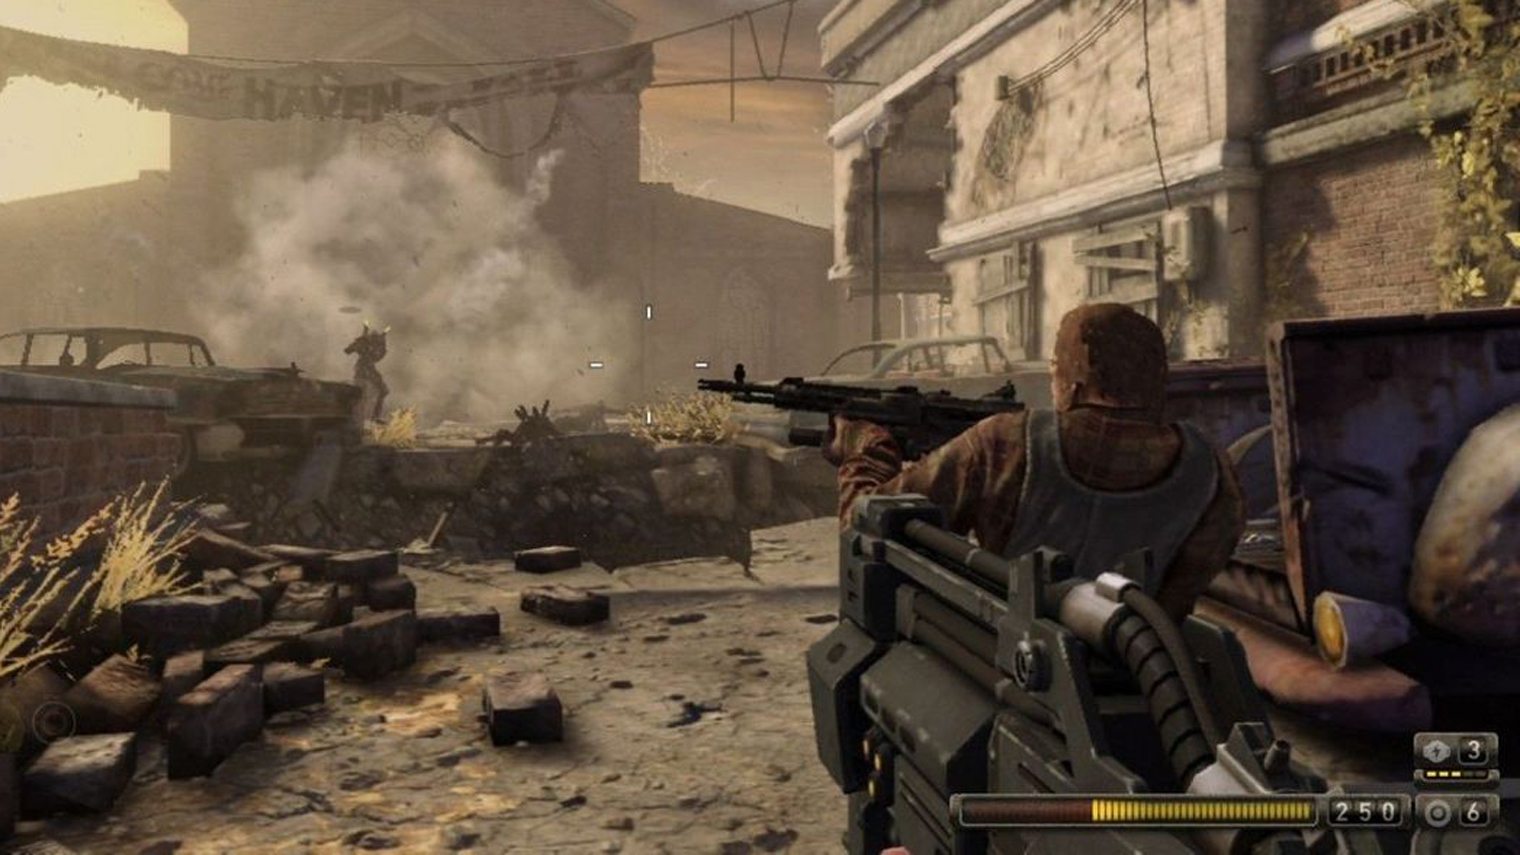 Визуально третья Resistance напоминает серию Fallout. Кадр: Sony